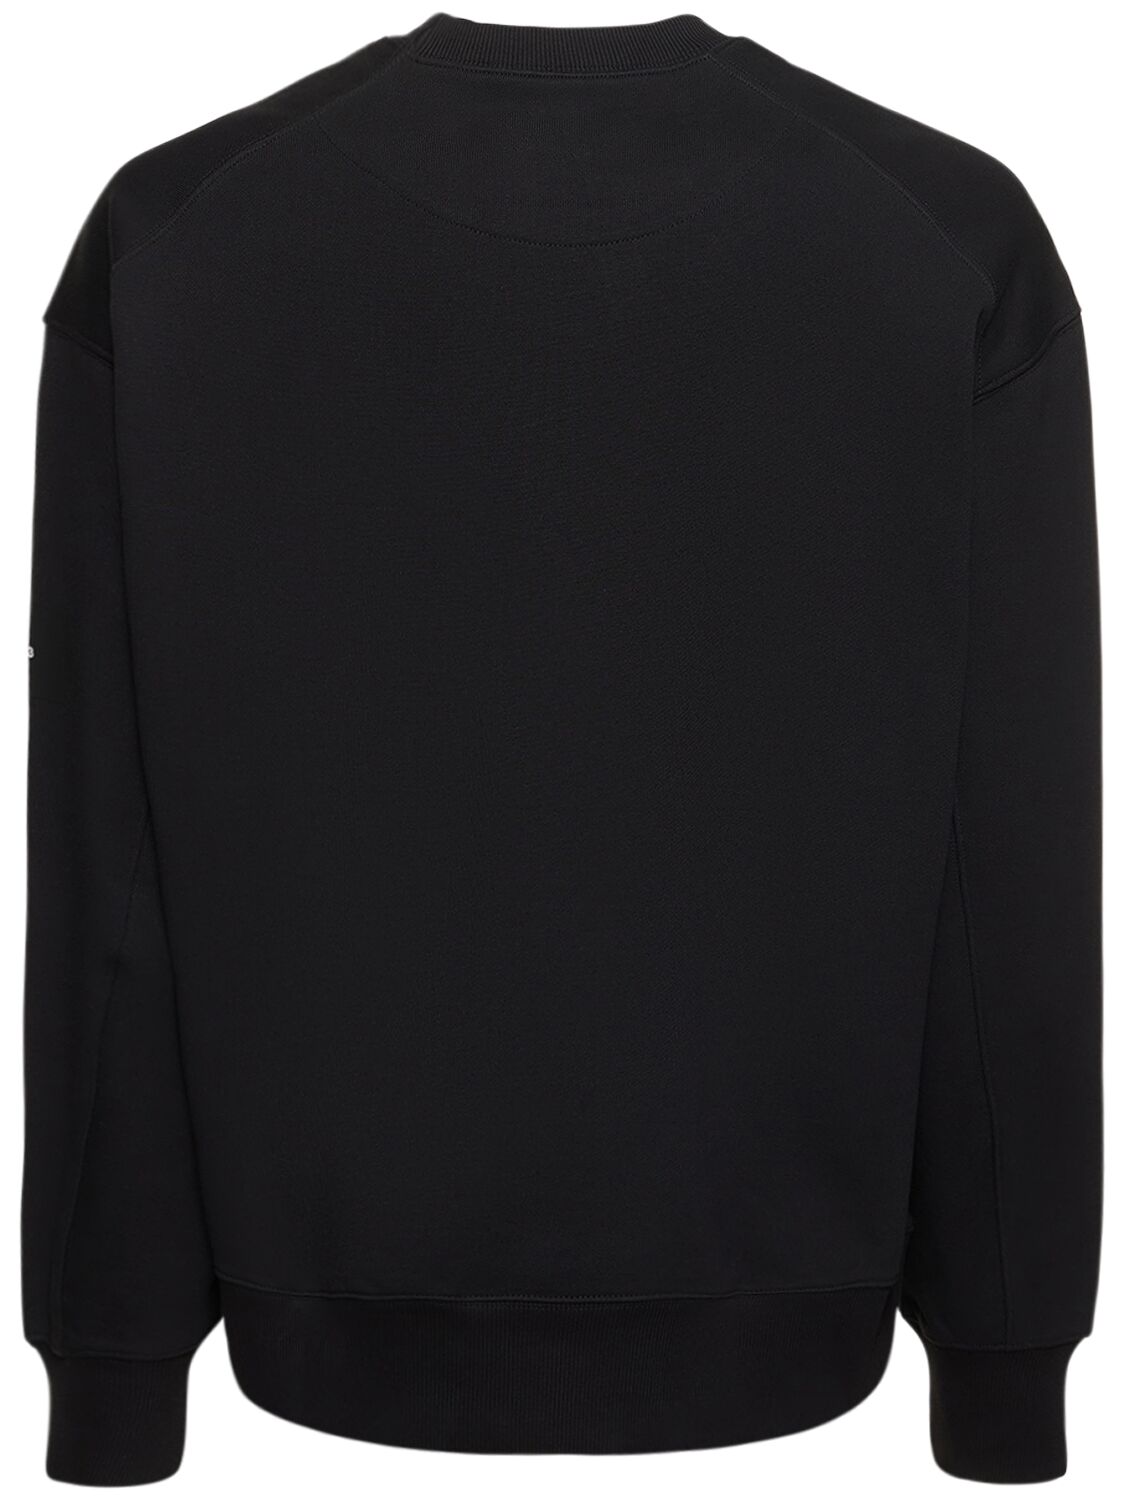 Shop Y-3 Logo Organic Cotton Crewneck Sweatshirt In Black